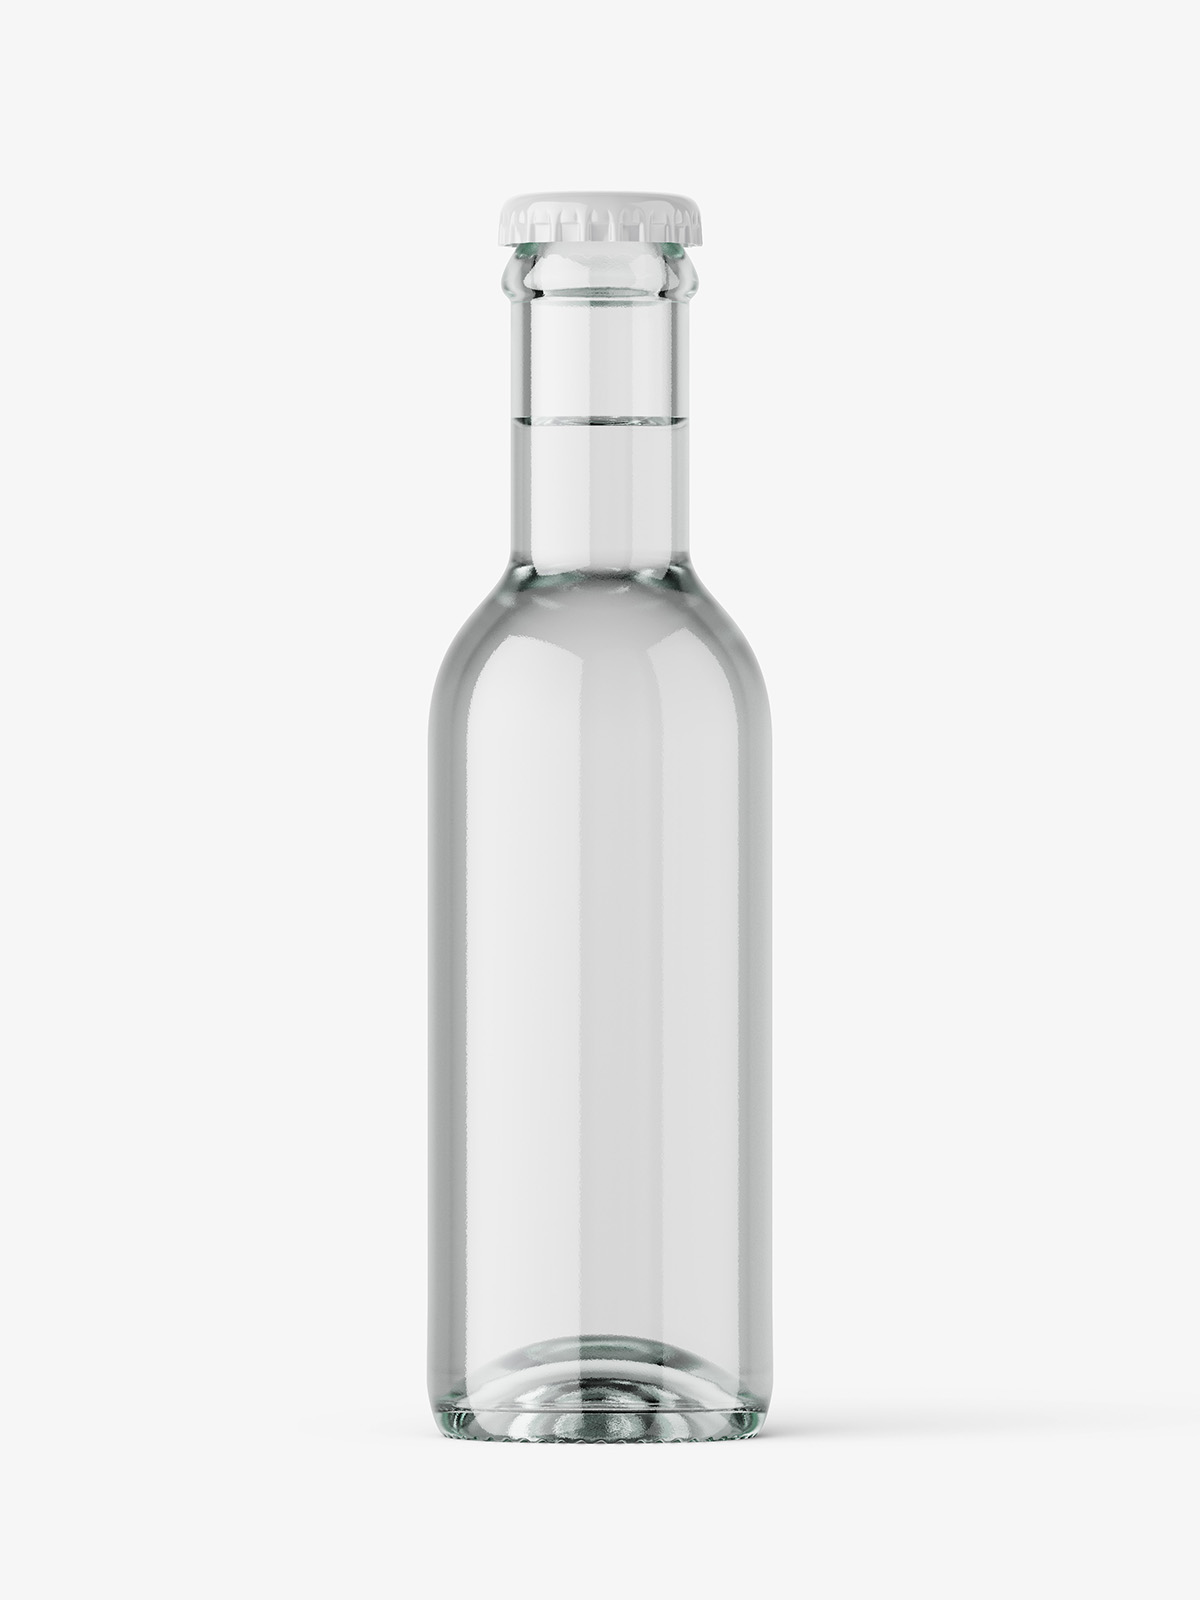 https://smartymockups.com/wp-content/uploads/2020/11/Clear_Glass_Bottle_Mockup_1.jpg